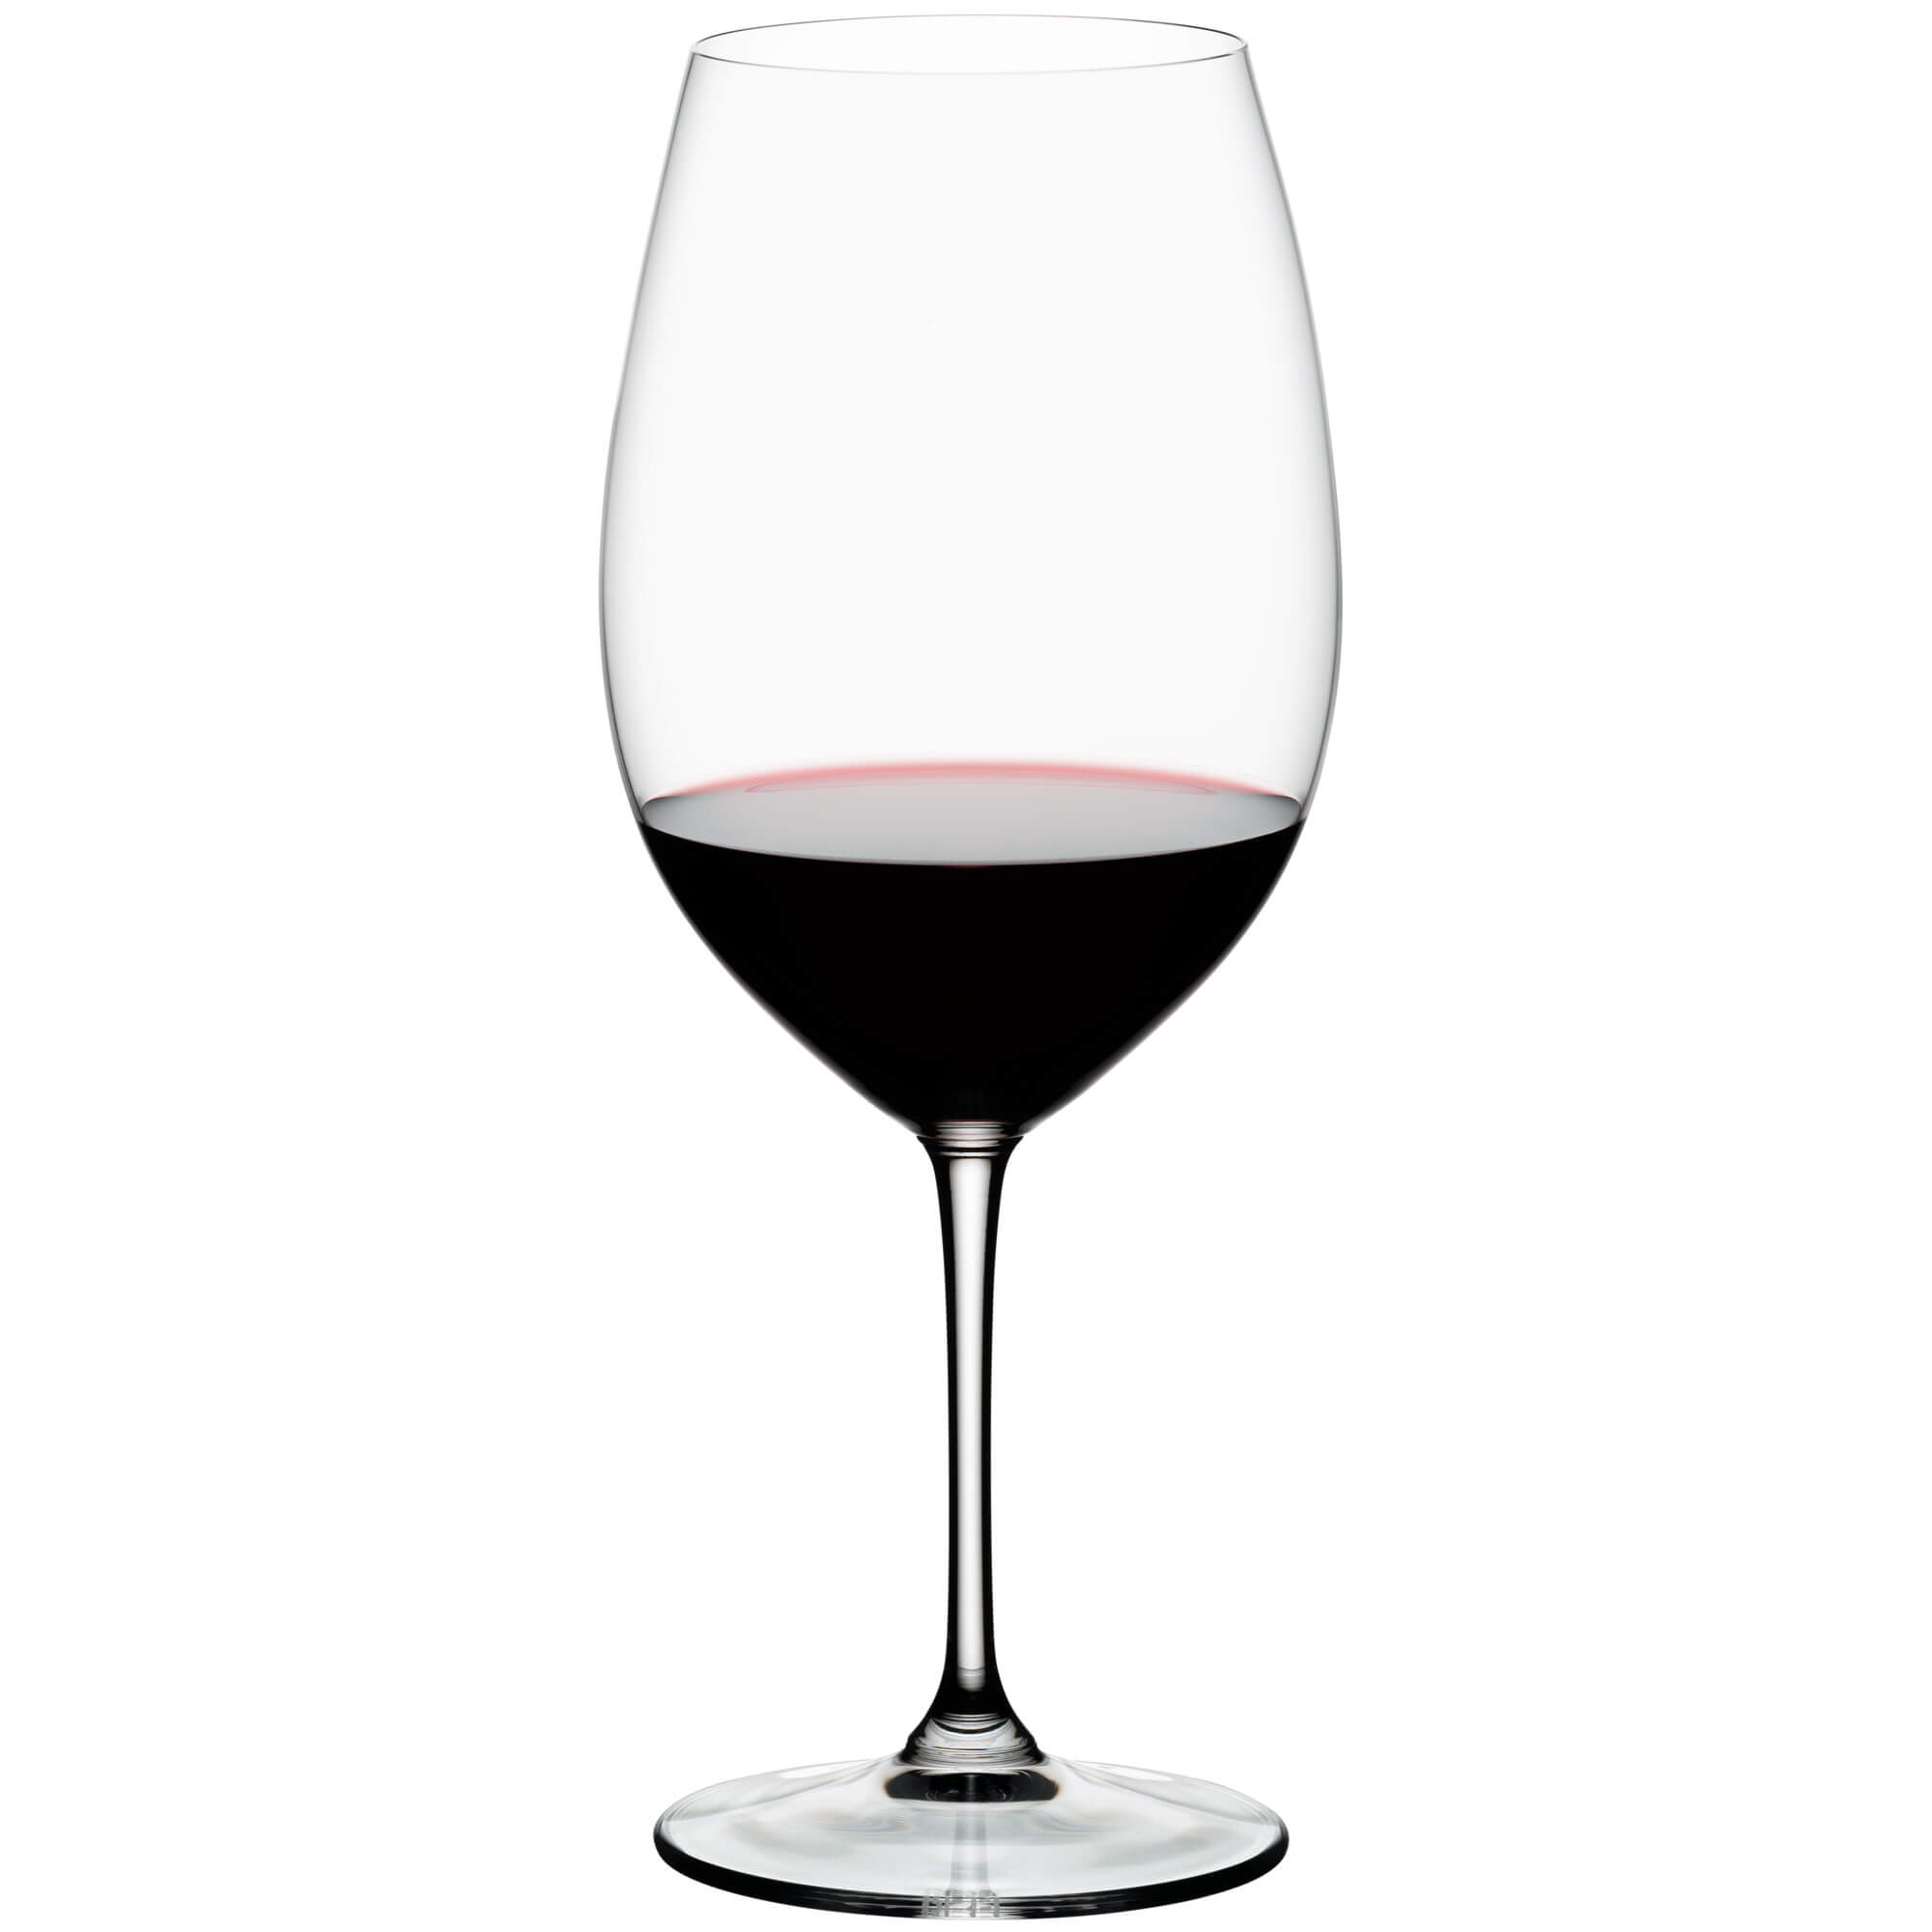 Bordeaux/Grand Cru Glas Vinum, Riedel - 960ml (2 Stk.)